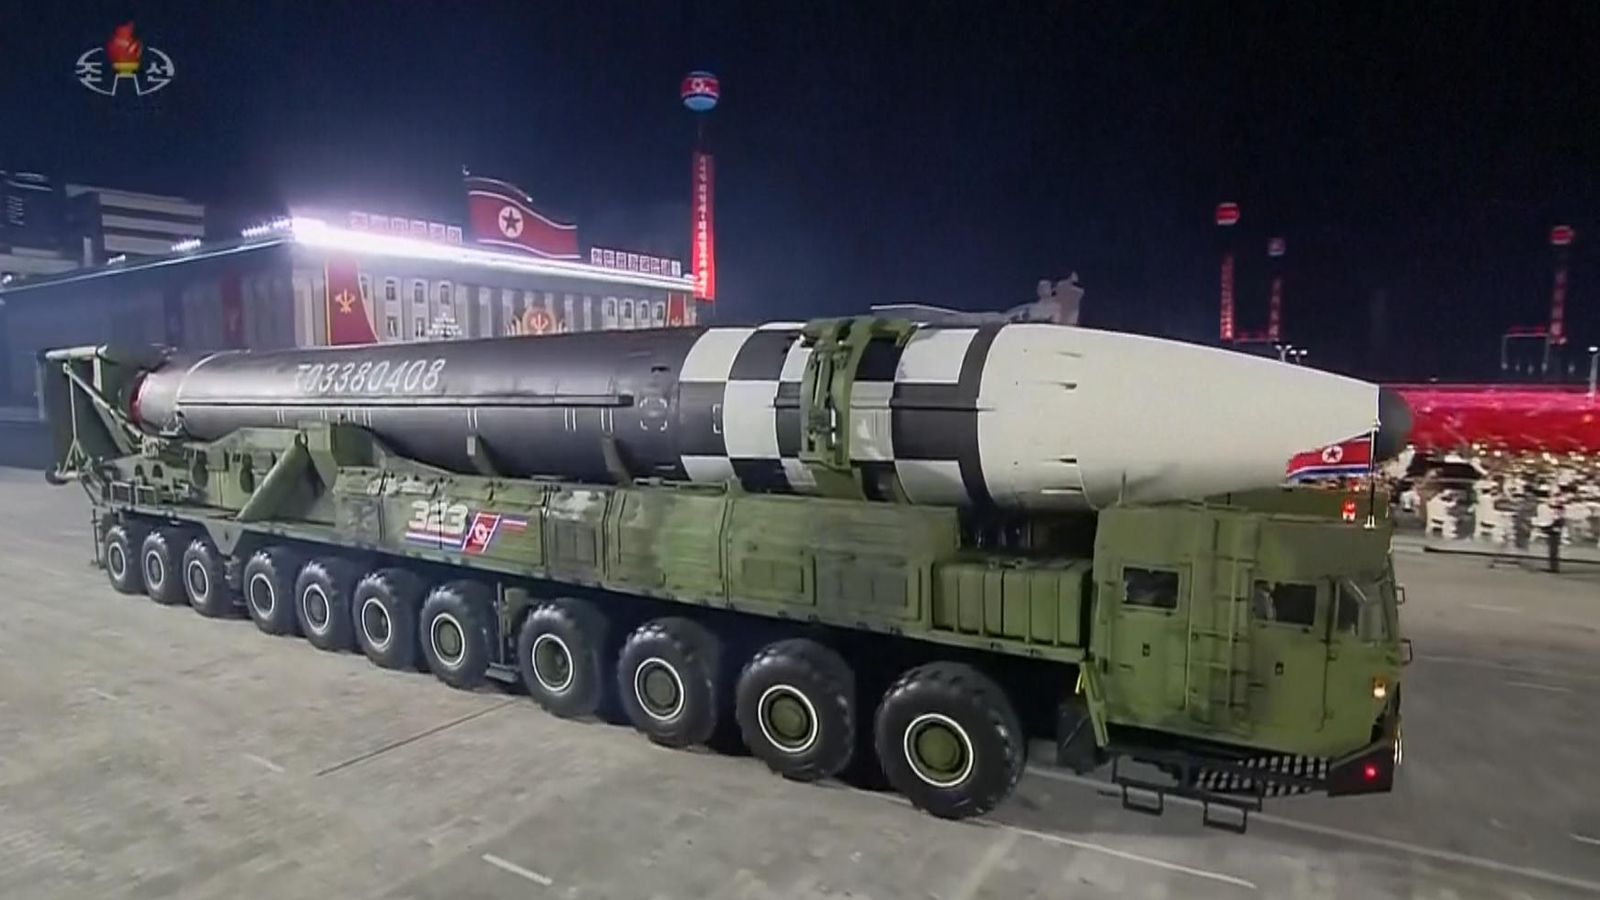 Ο Κιμ Γιονγκ Ουν παρουσίασε τον νέο διηπειρωτικό πύραυλο της Β. Κορέας